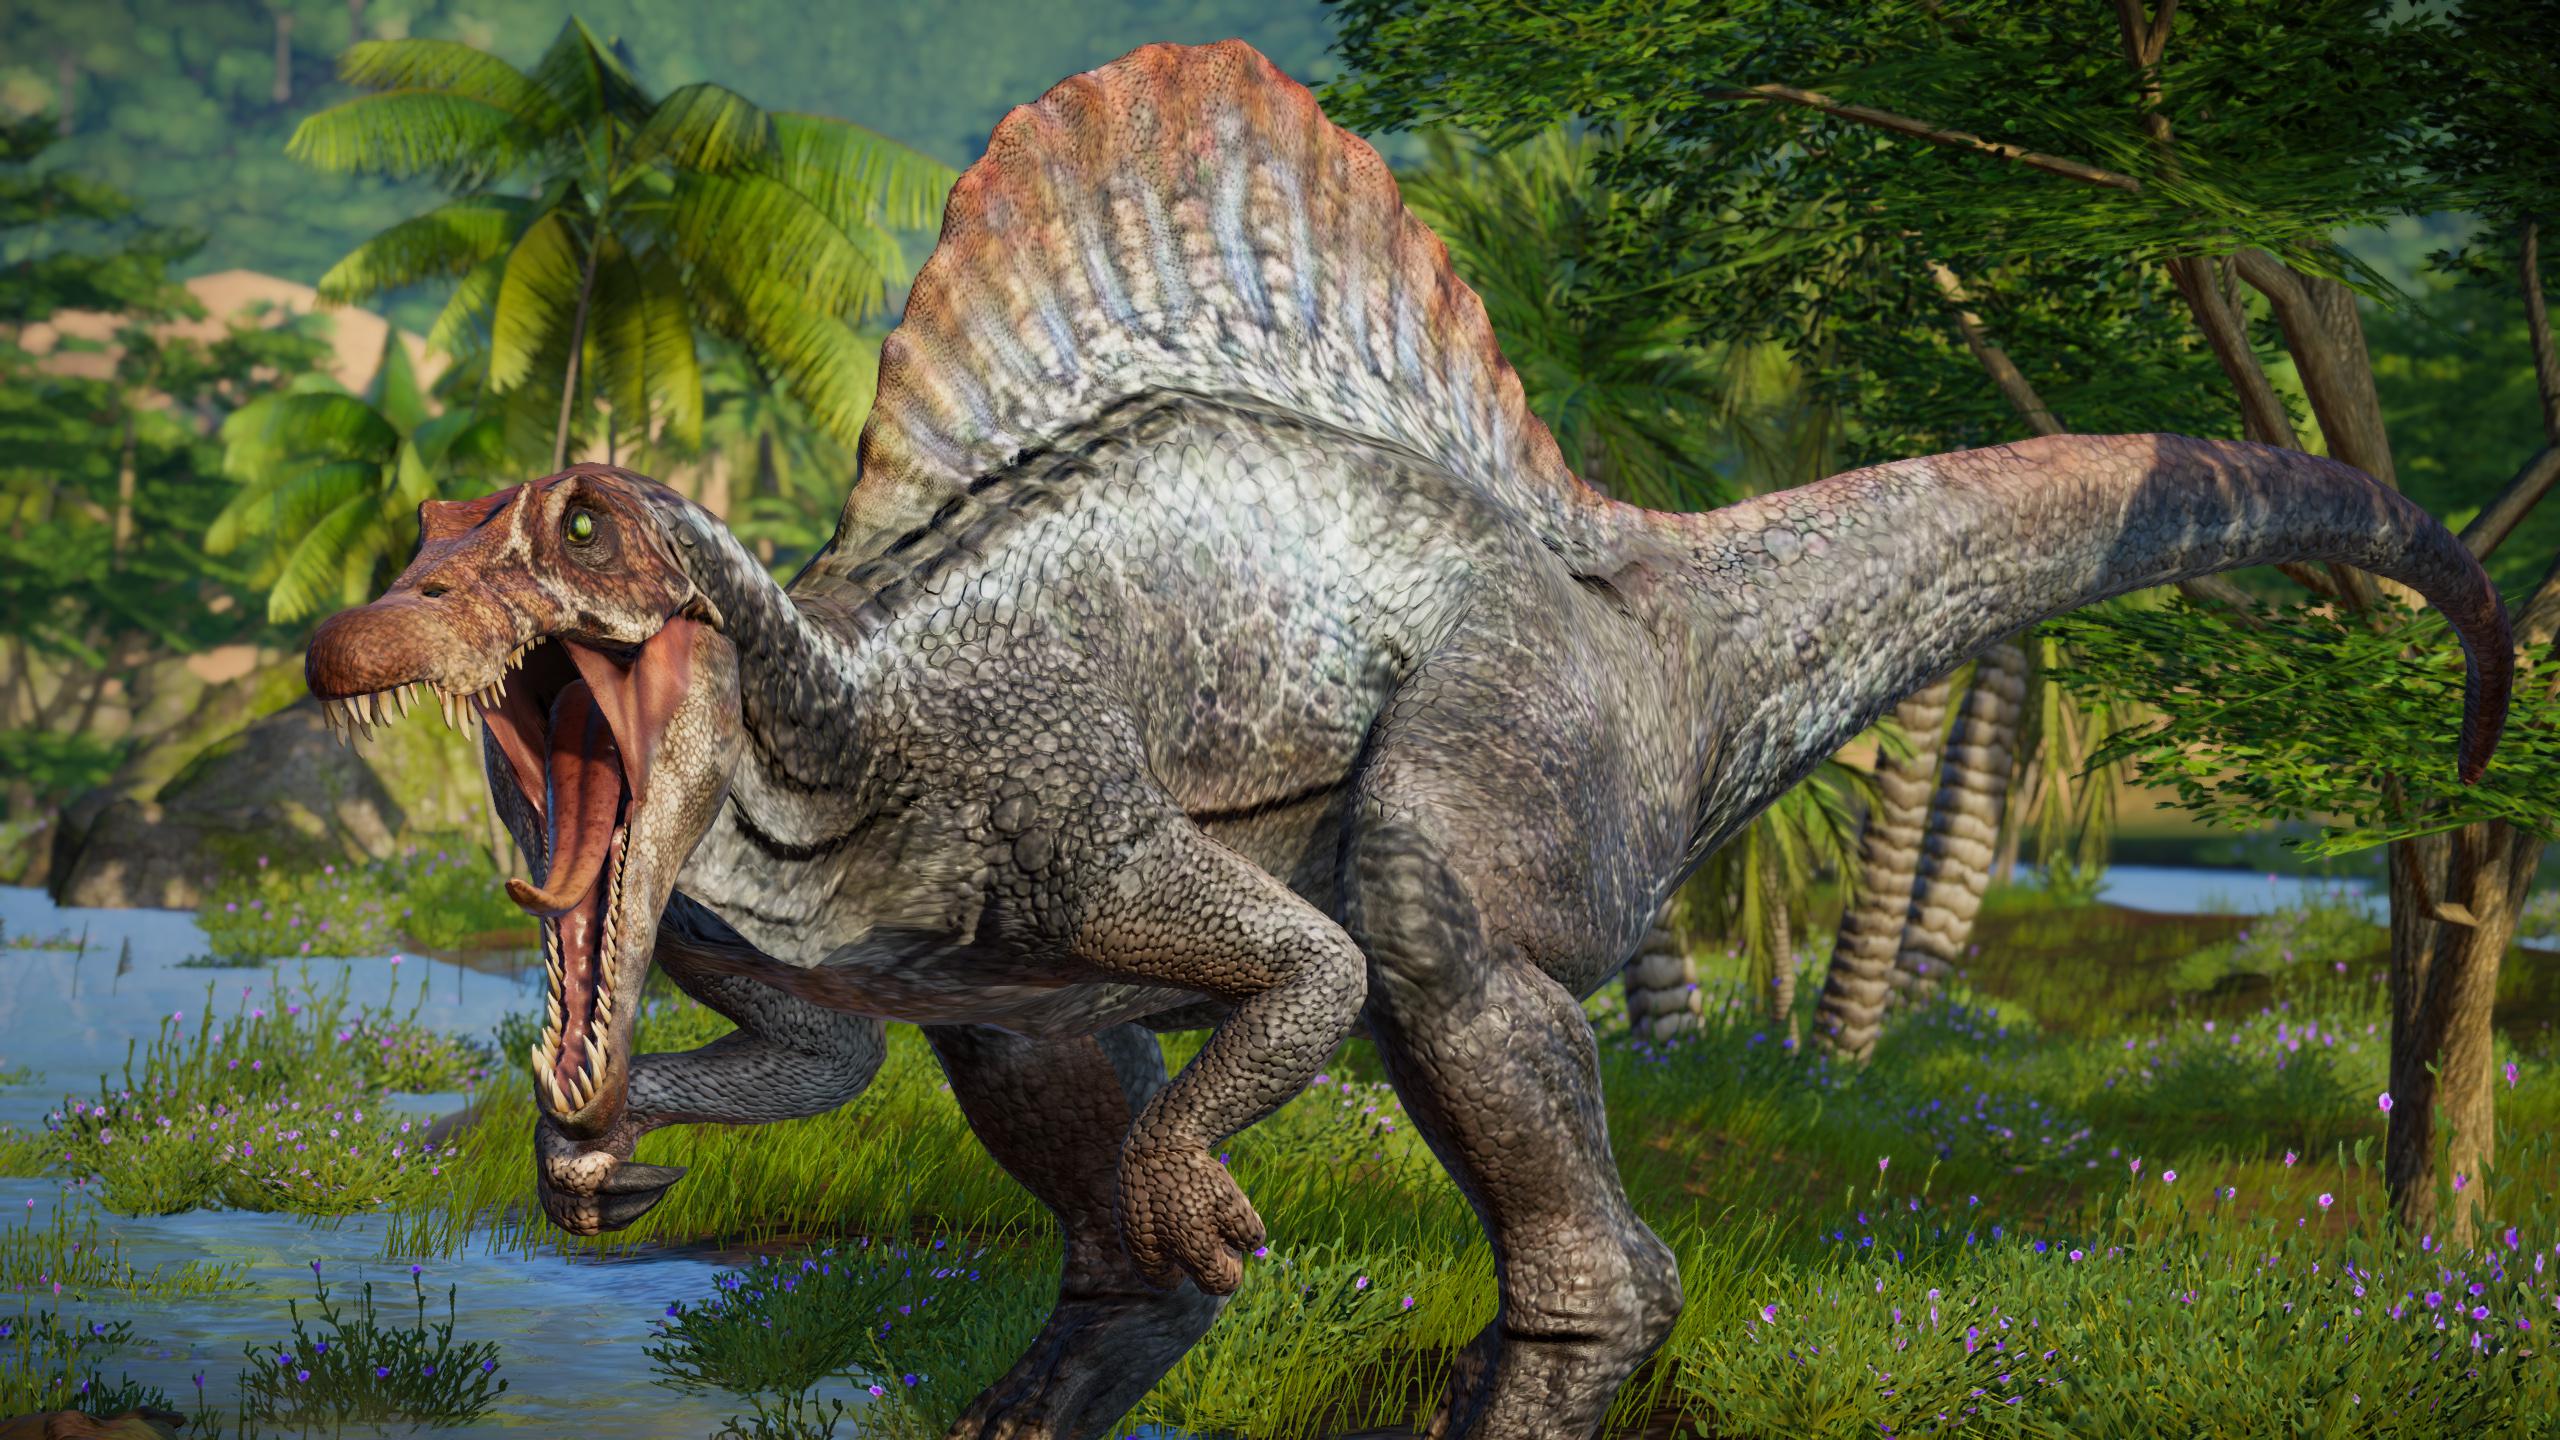 Spinosaurus From JP3 /Credit: NikoRex from NEXUSMODS!: jurassicworldevo.